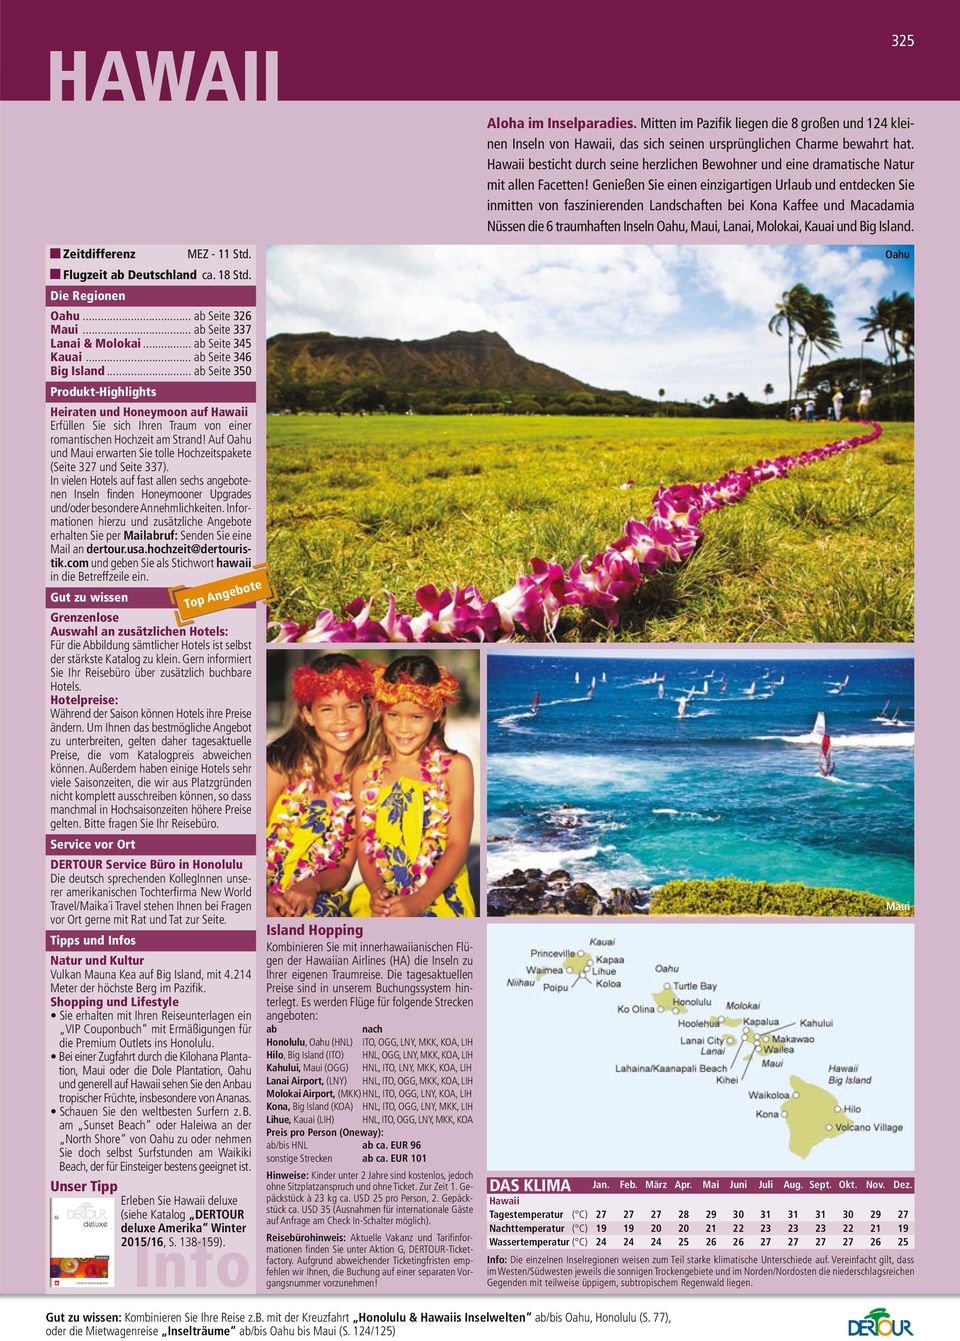 Genießen Sie einen einzigartigen Urlaub und entdecken Sie inmitten von faszinierenden Landschaften bei Kona Kaffee und Macadamia Nüssen die 6 traumhaften Inseln Oahu, Maui, Lanai, Molokai, Kauai und